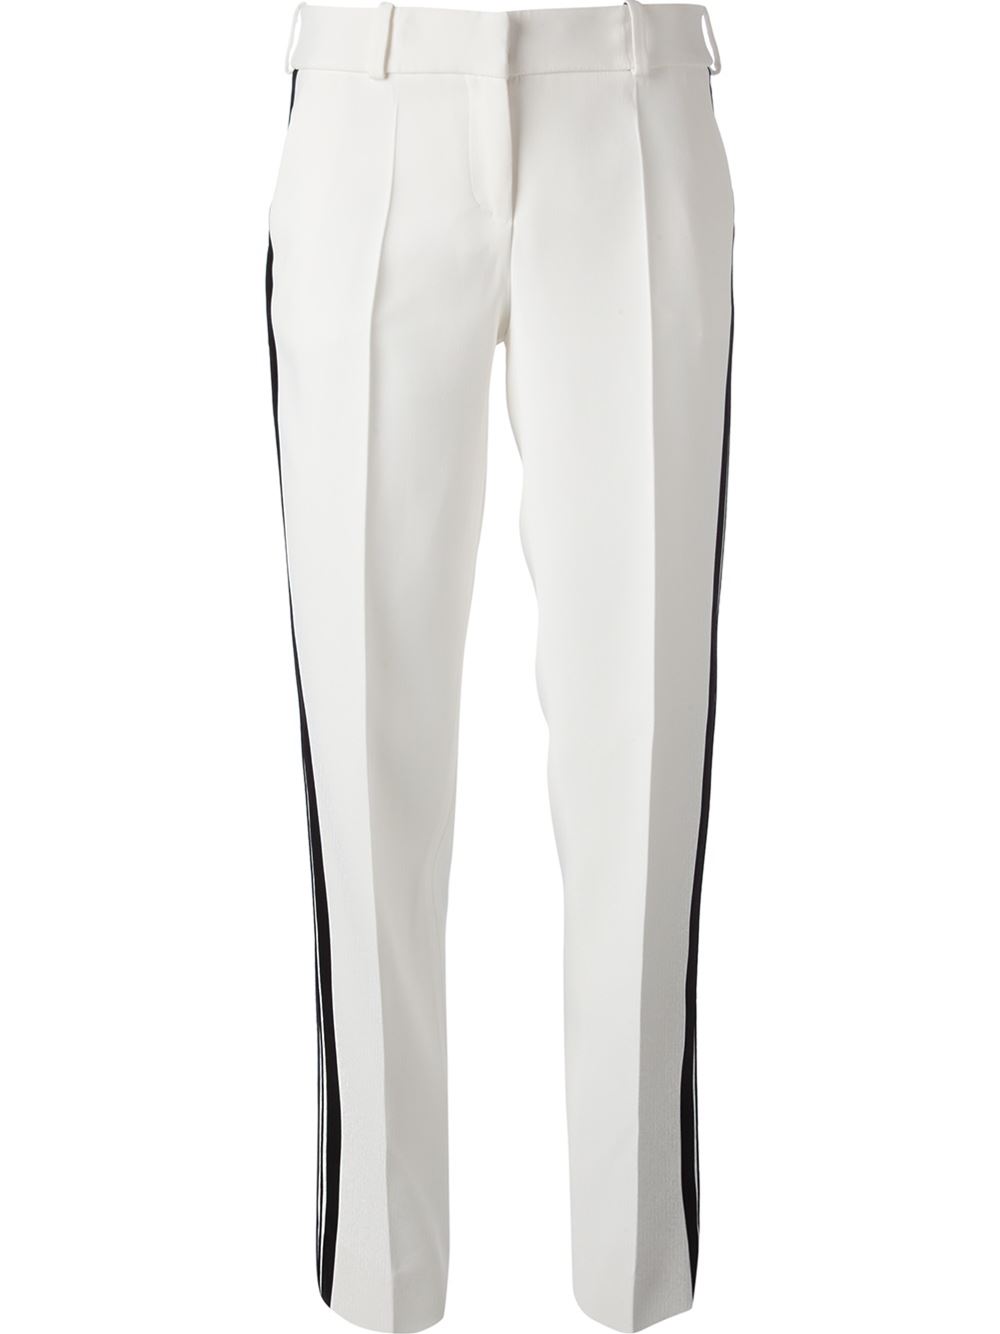 GIORGIO ARMANI white wide leg trousers black side stripe